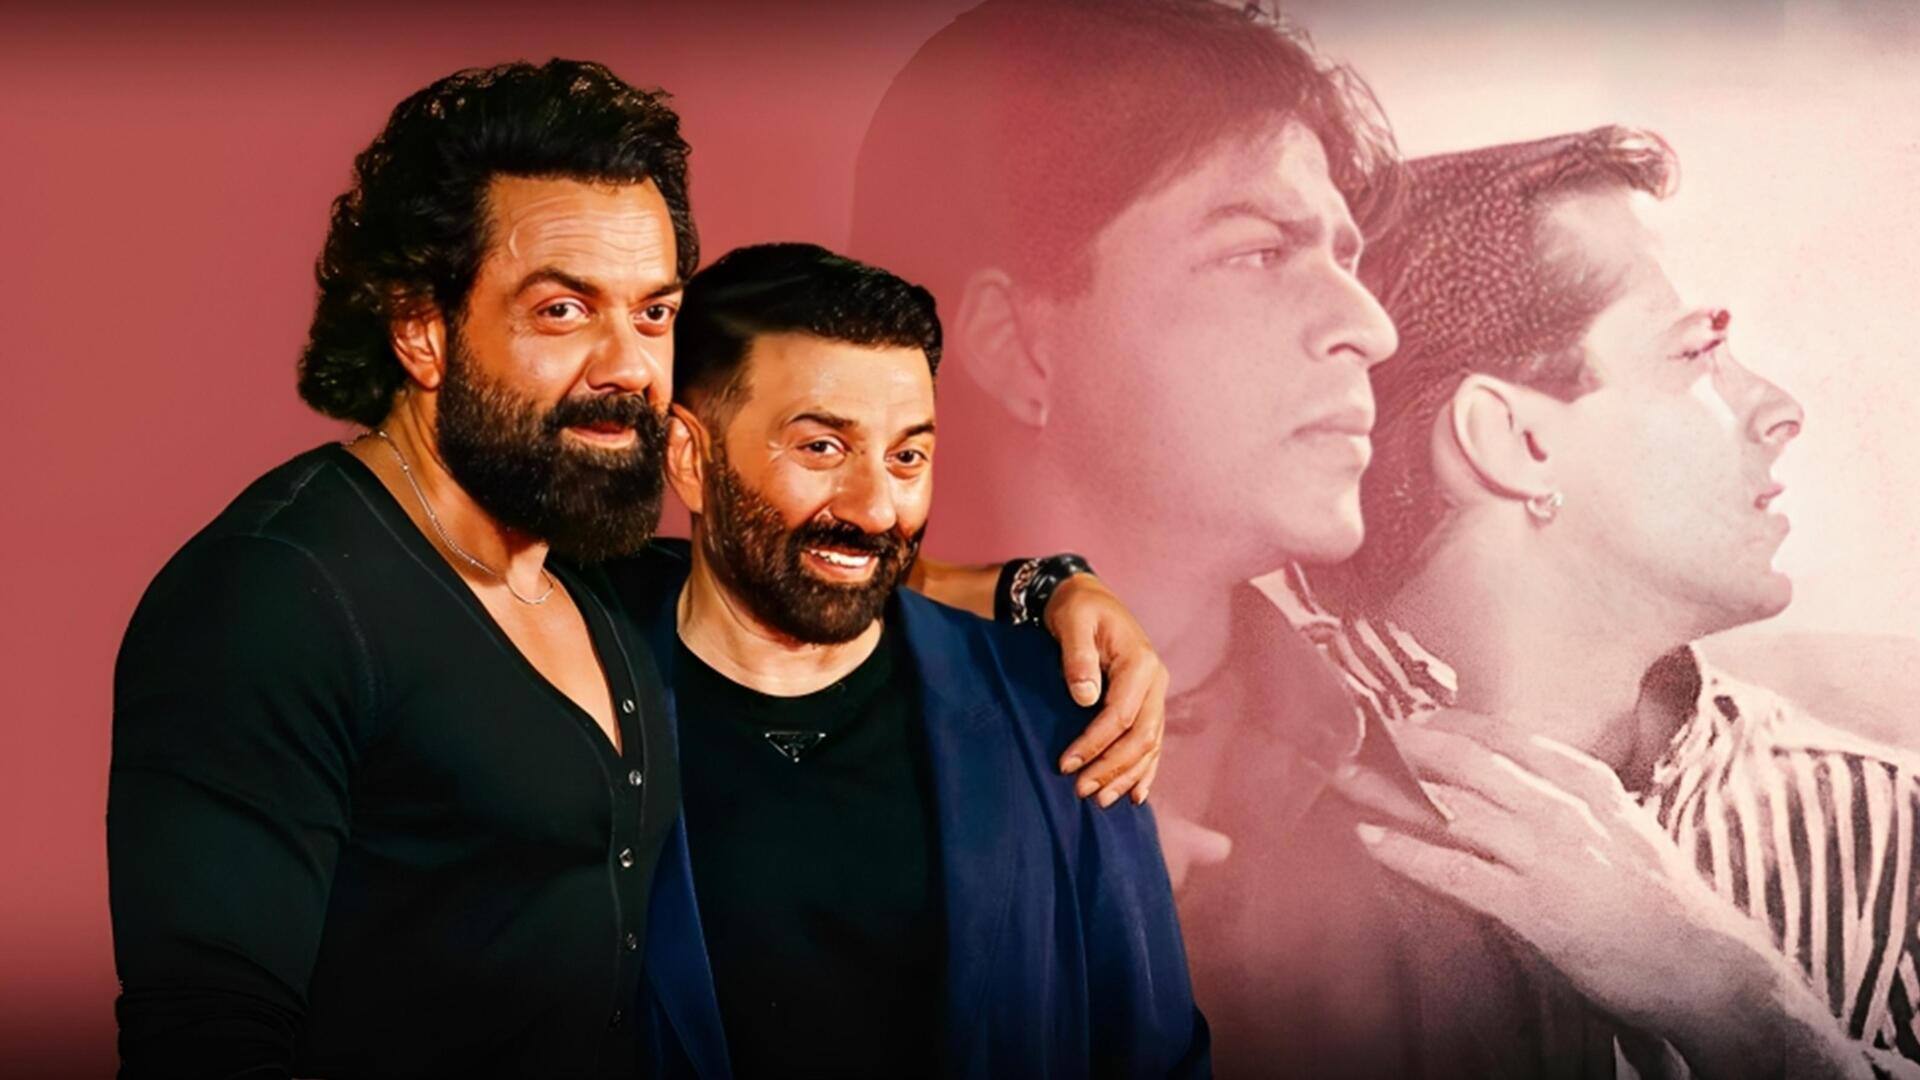 शाहरुख खान-सलमान खान नहीं, सनी देओल-बॉबी देओल थे 'करण अर्जुन' के लिए पहली पसंद